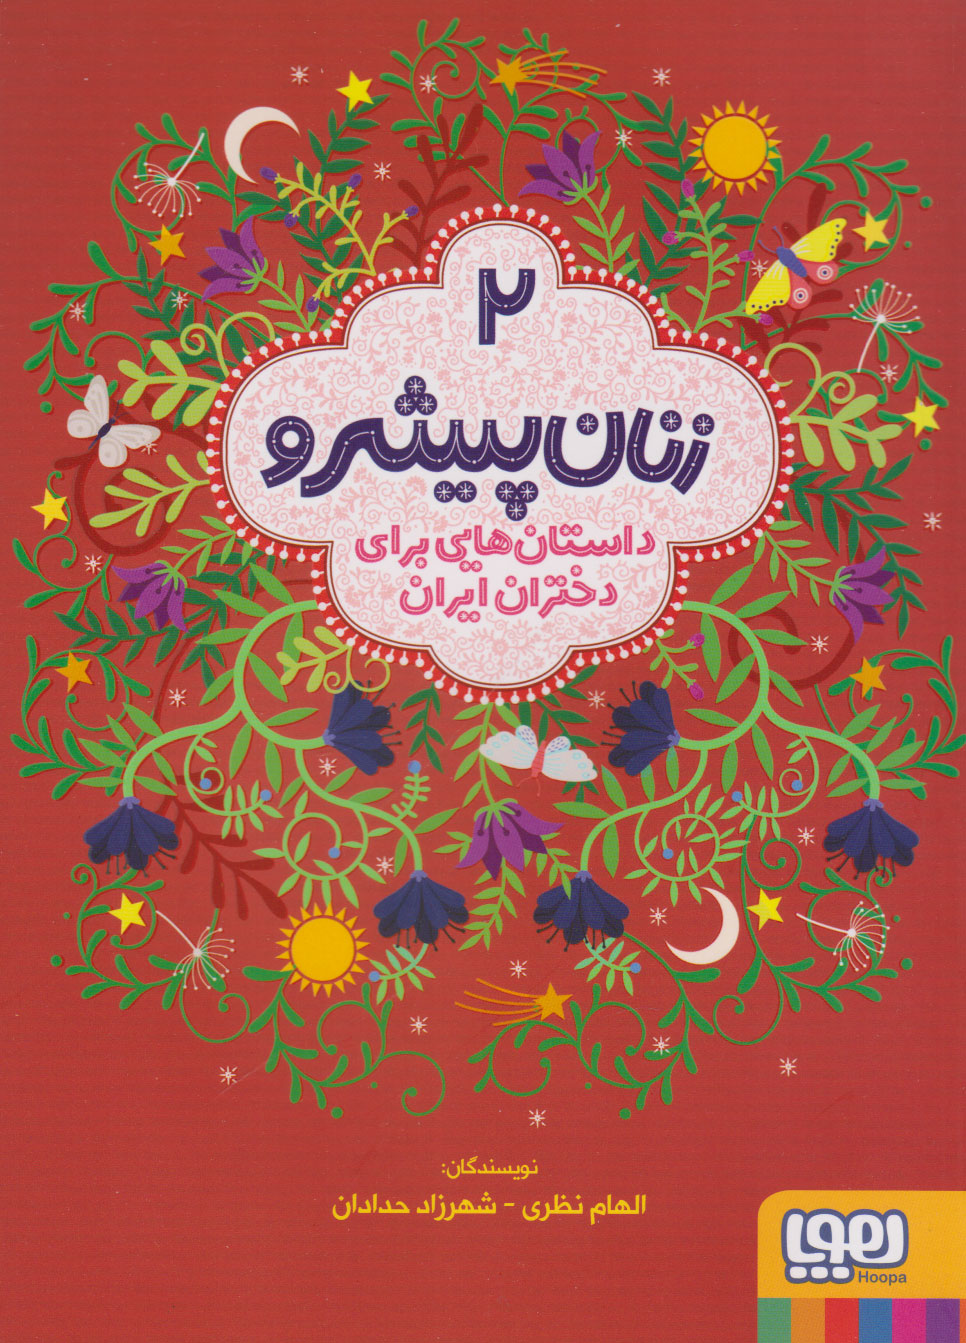  کتاب زنان پیشرو 2 (داستان هایی برای دختران ایران)